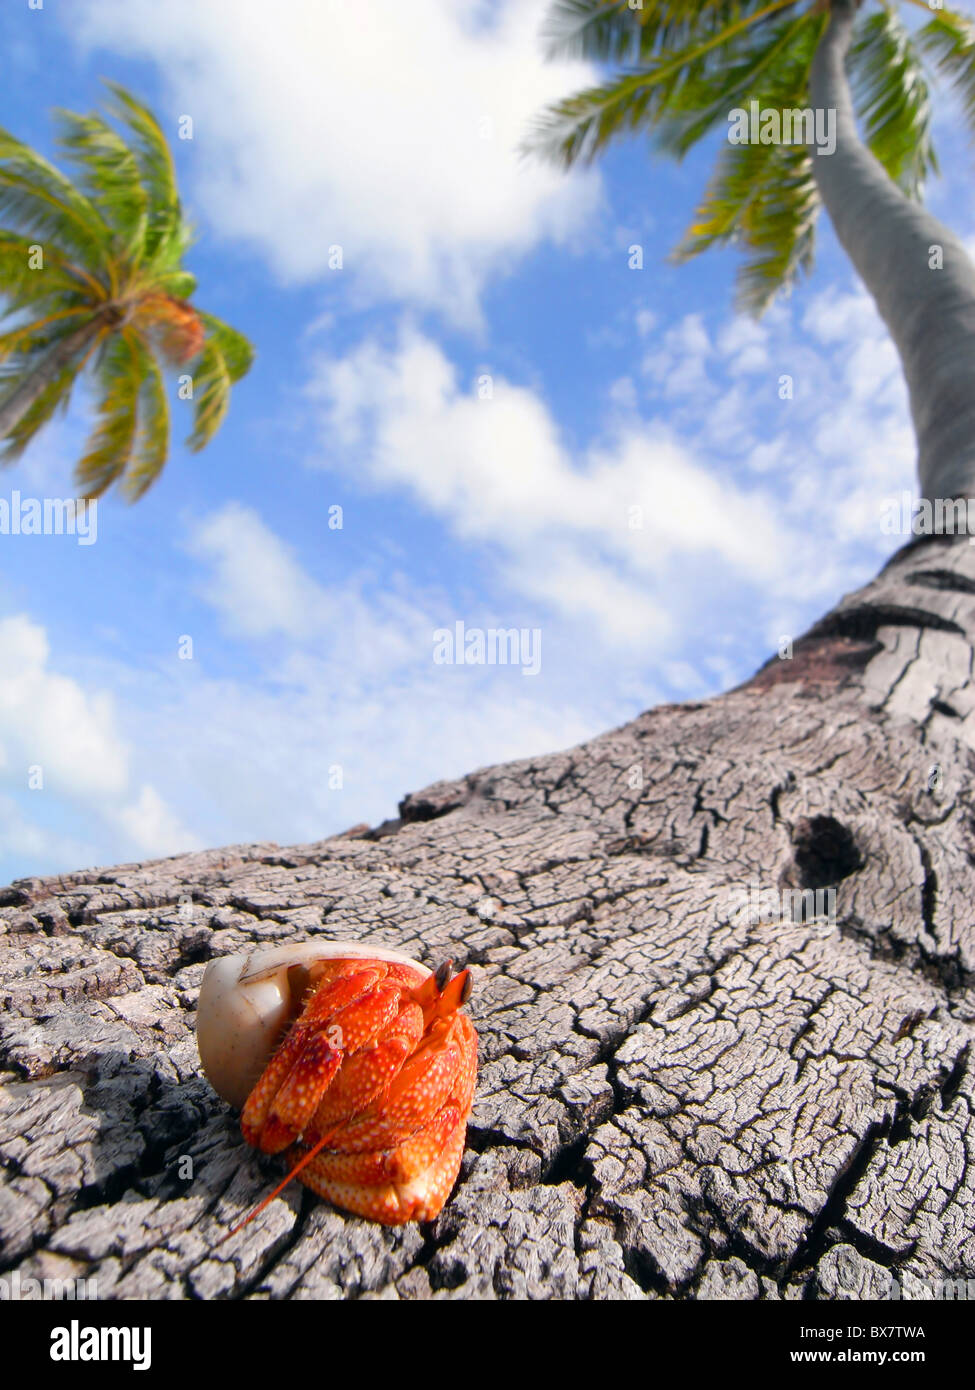 Einsiedlerkrebs (Coenobita SP.) auf Basis von Kokos (Cocos Nucifera), West palm Island, Cocos Keeling, Indischer Ozean Stockfoto